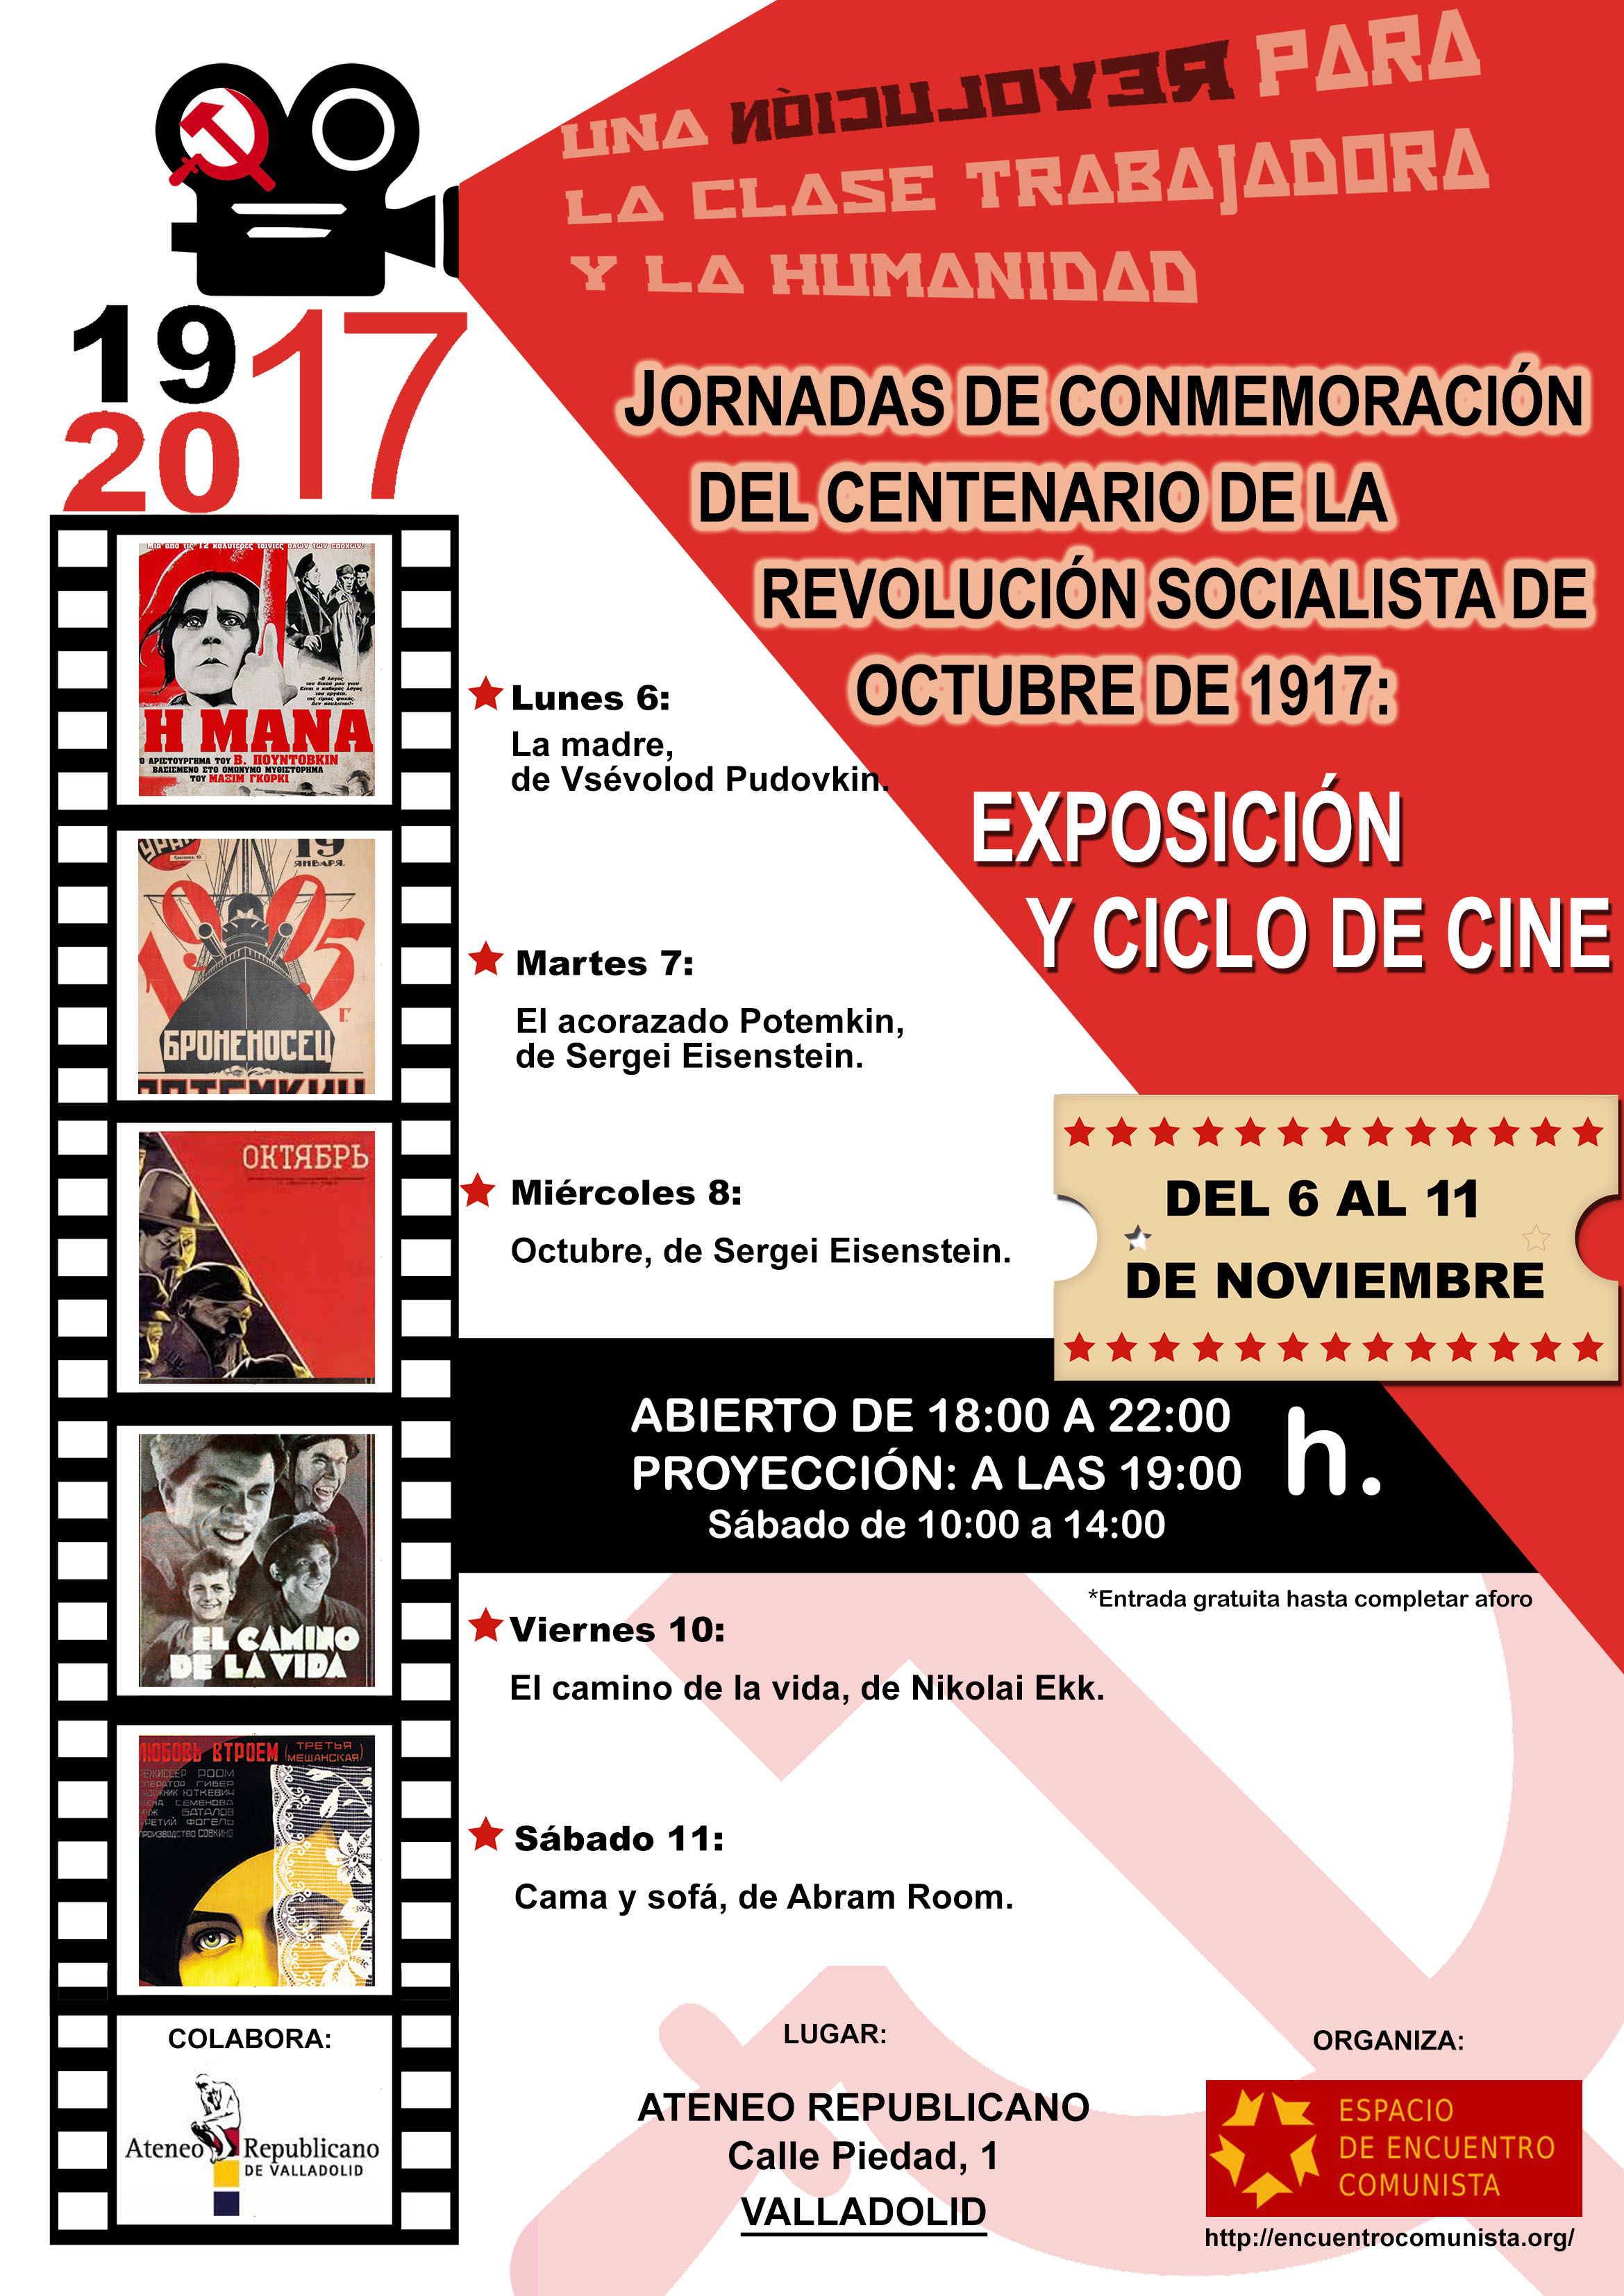 6 al 11 de noviembre, Valladolid